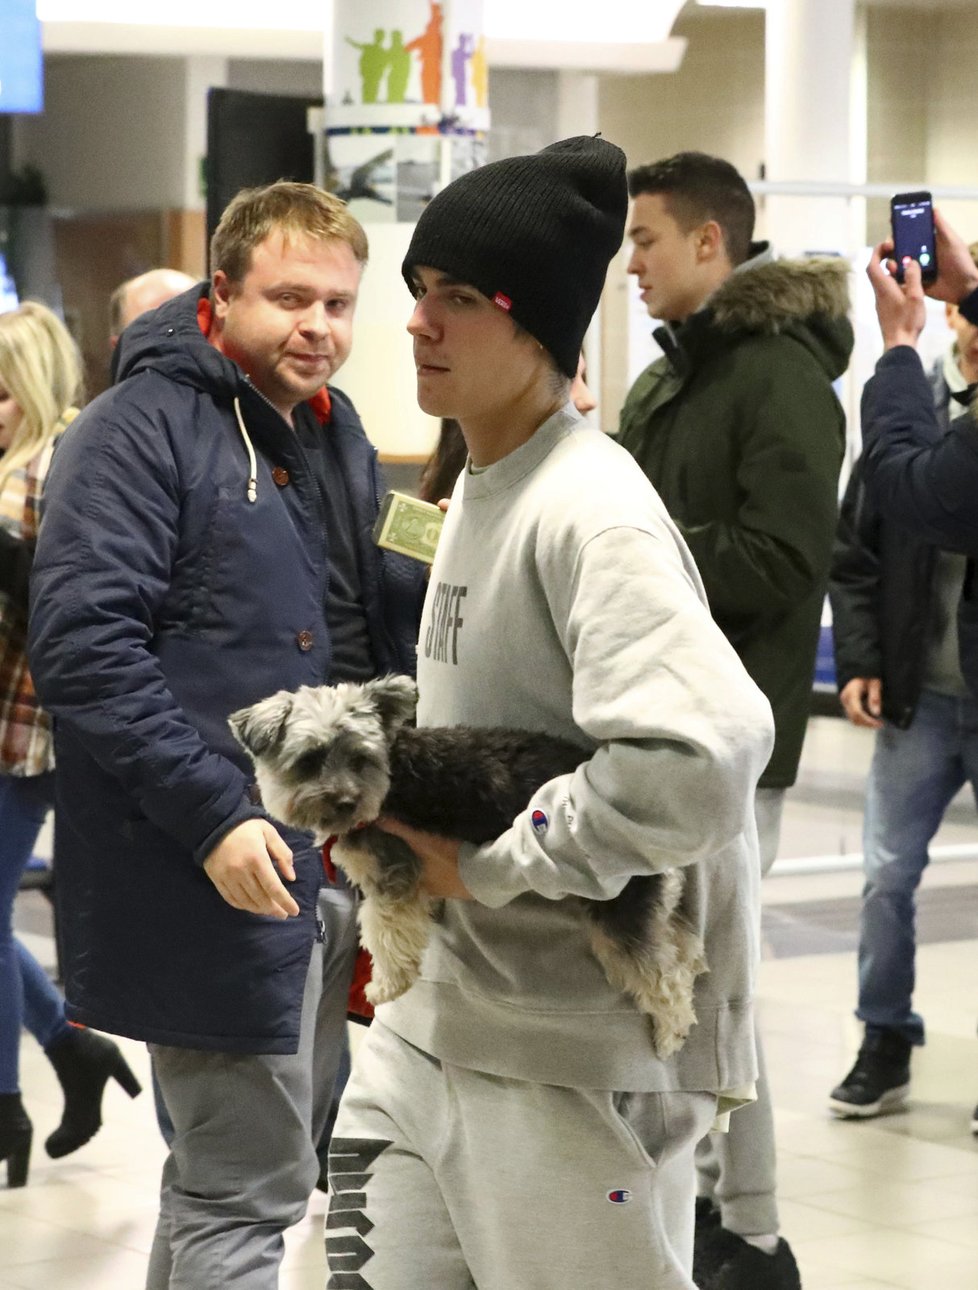 Justin si sebou do Prahy přivezl i psího kamaráda.